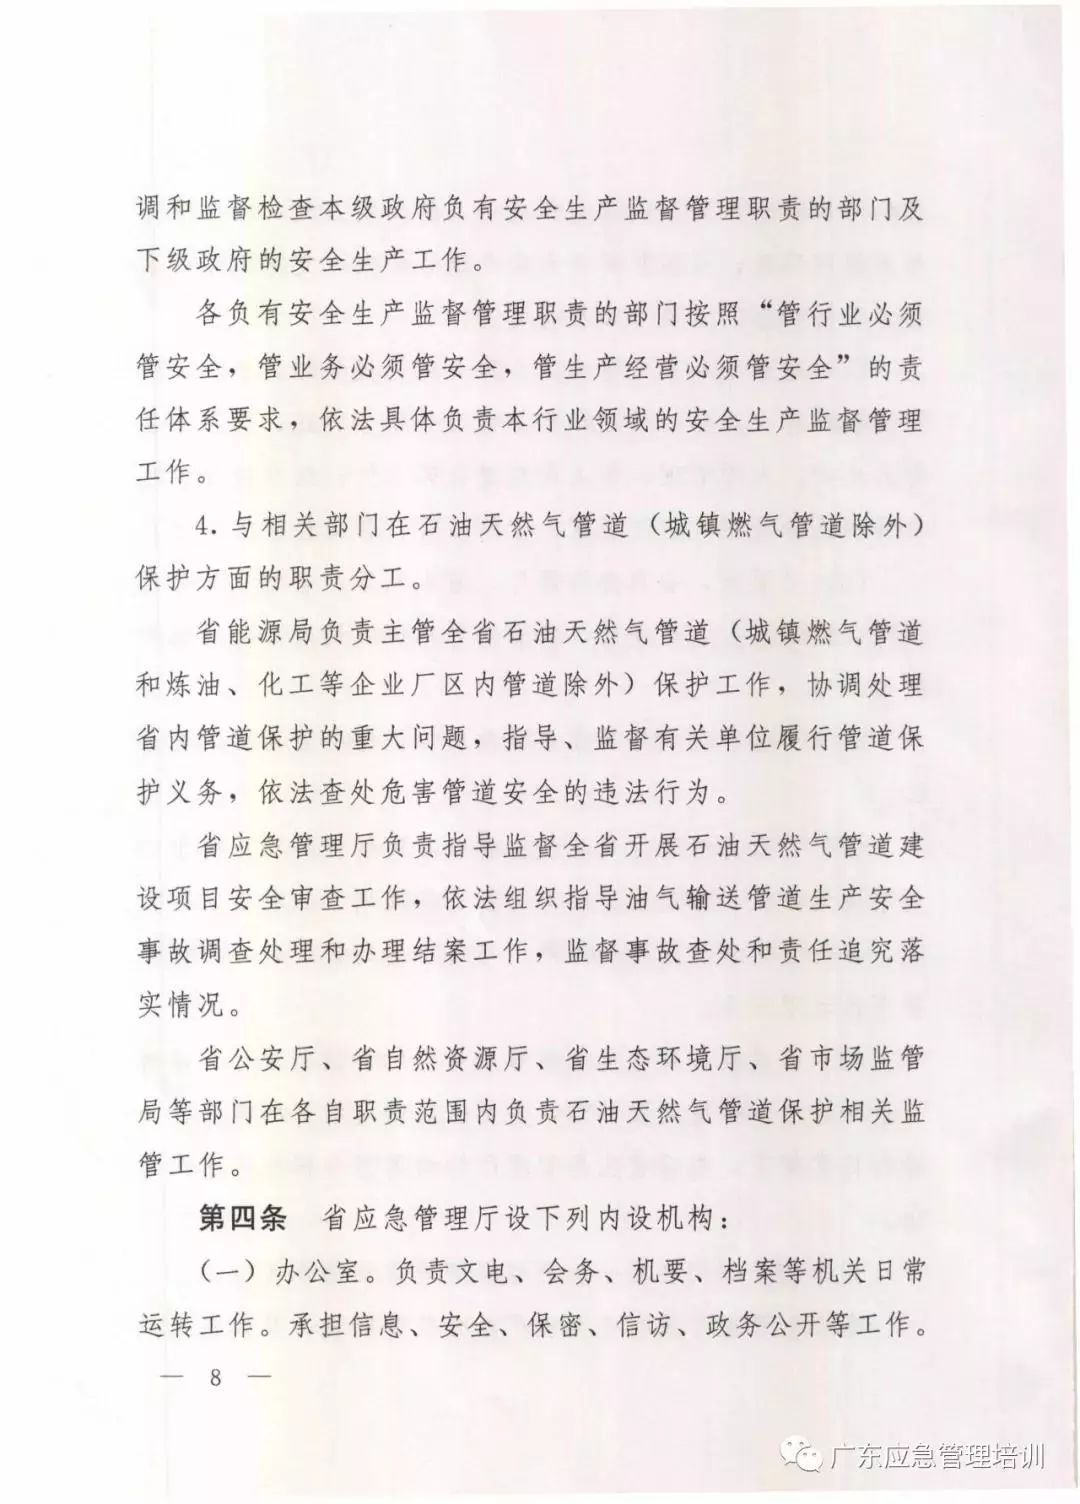 期盼已久的广东省应急管理厅三定方案现出炉